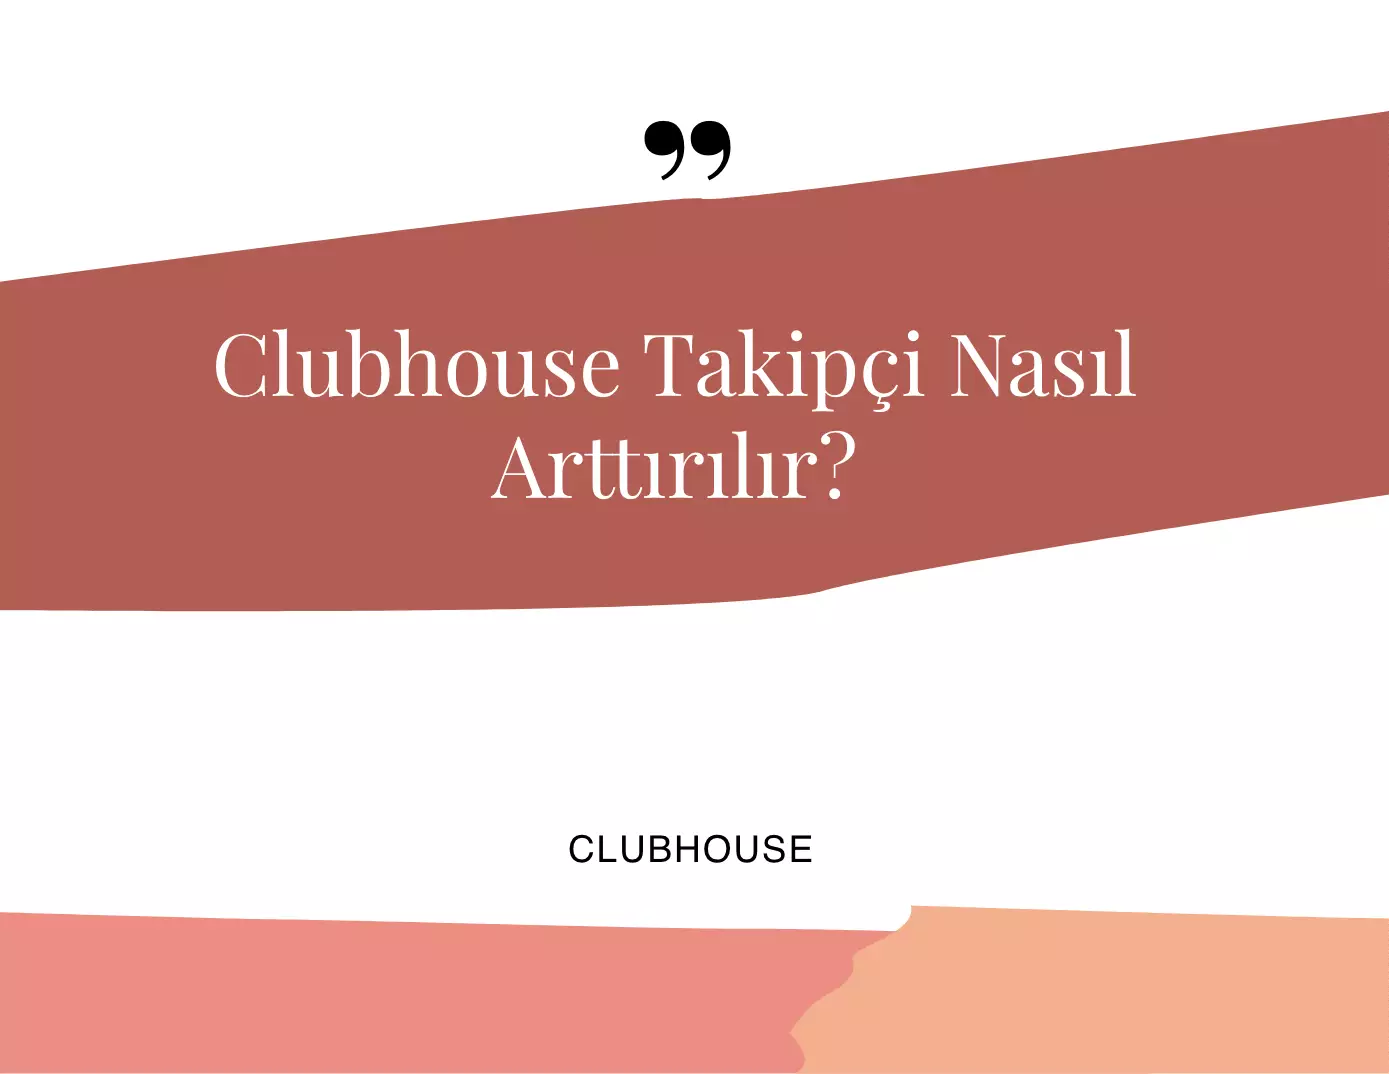 Clubhouse Takipçi Nasıl Arttırılır?